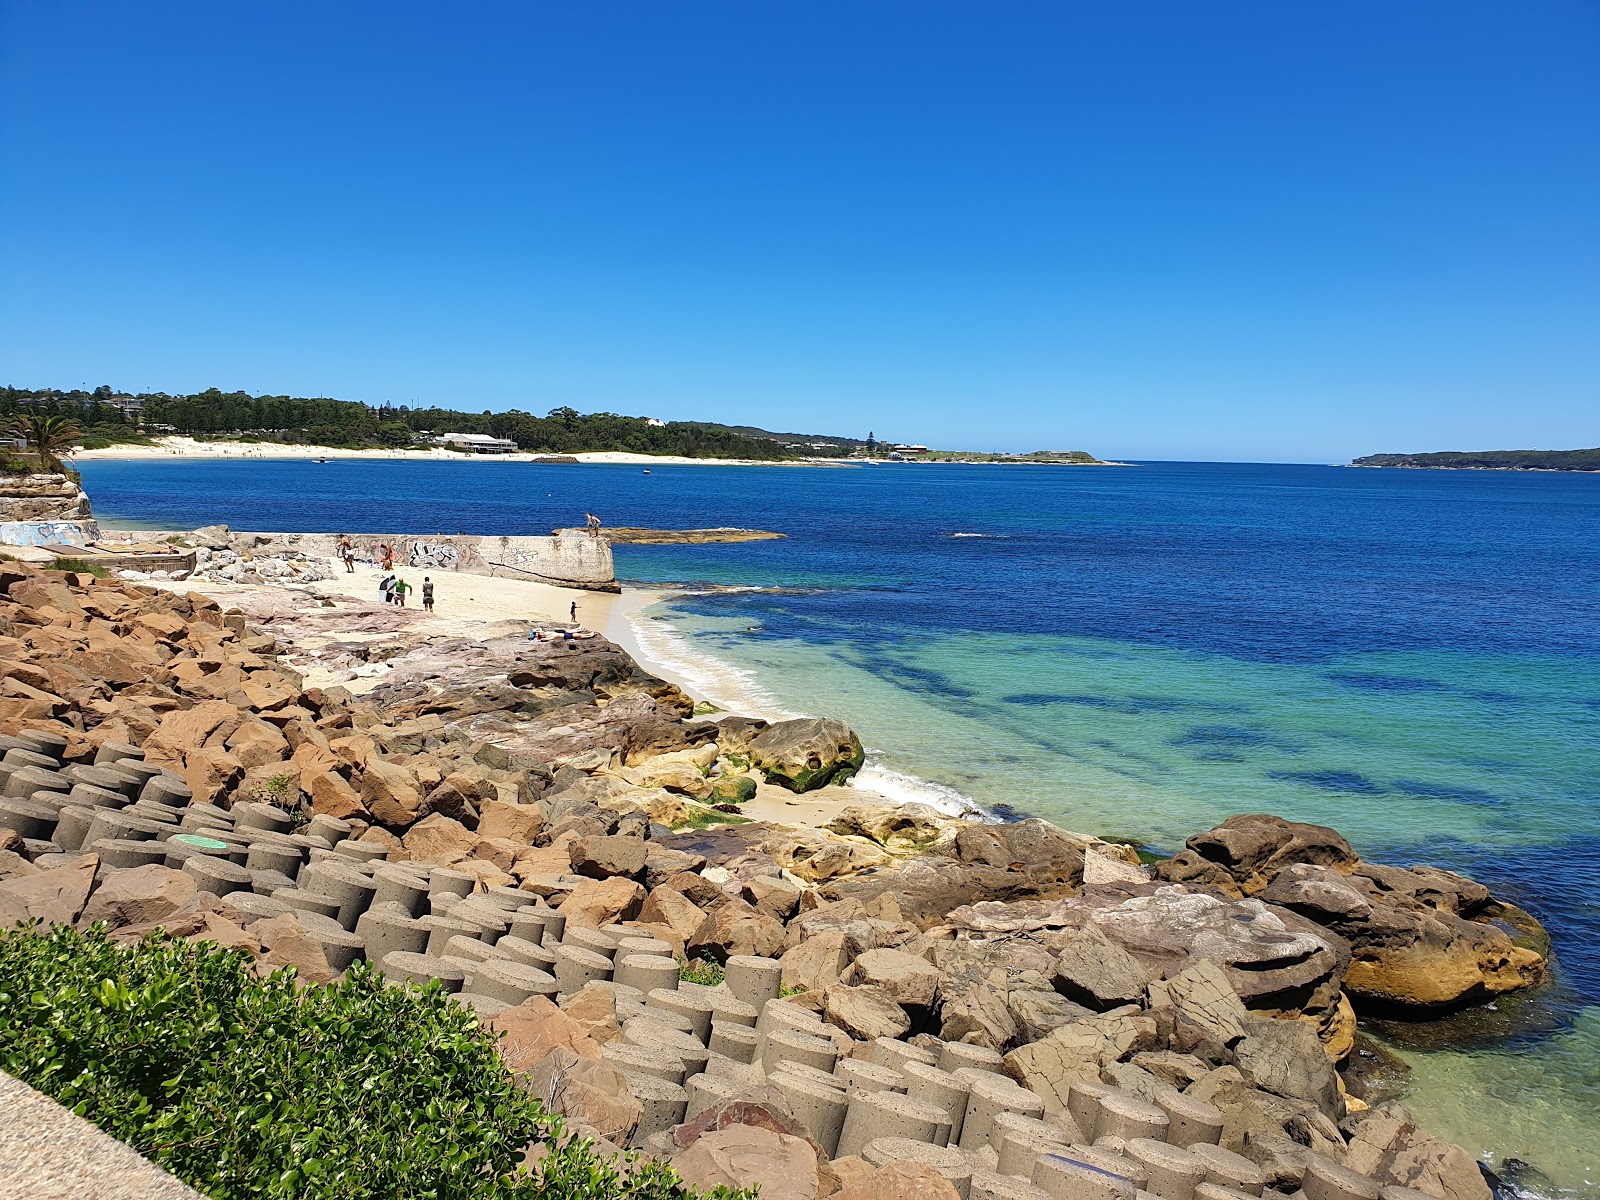 Zdjęcie Yarra Bay Beach - popularne miejsce wśród znawców relaksu